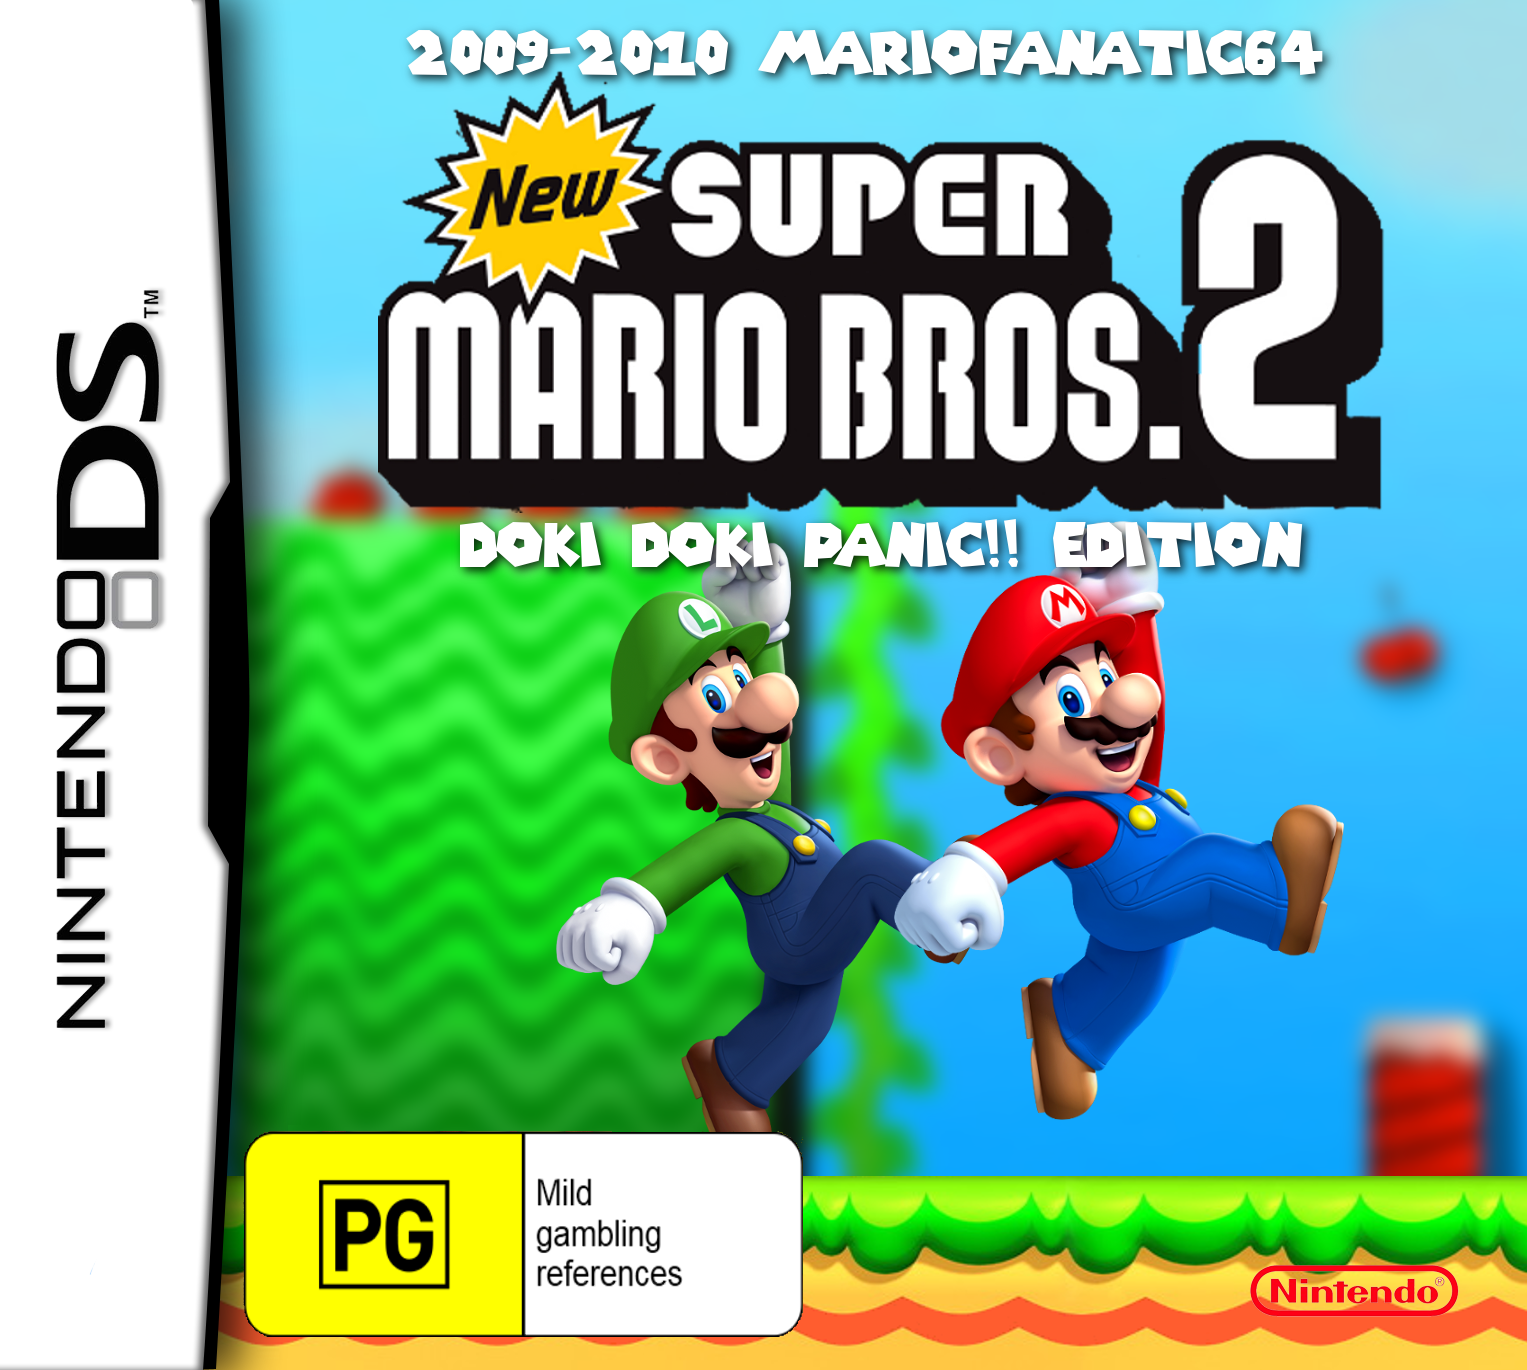 Super Mario Bros 64 Rom Hack Download Mediaf?re